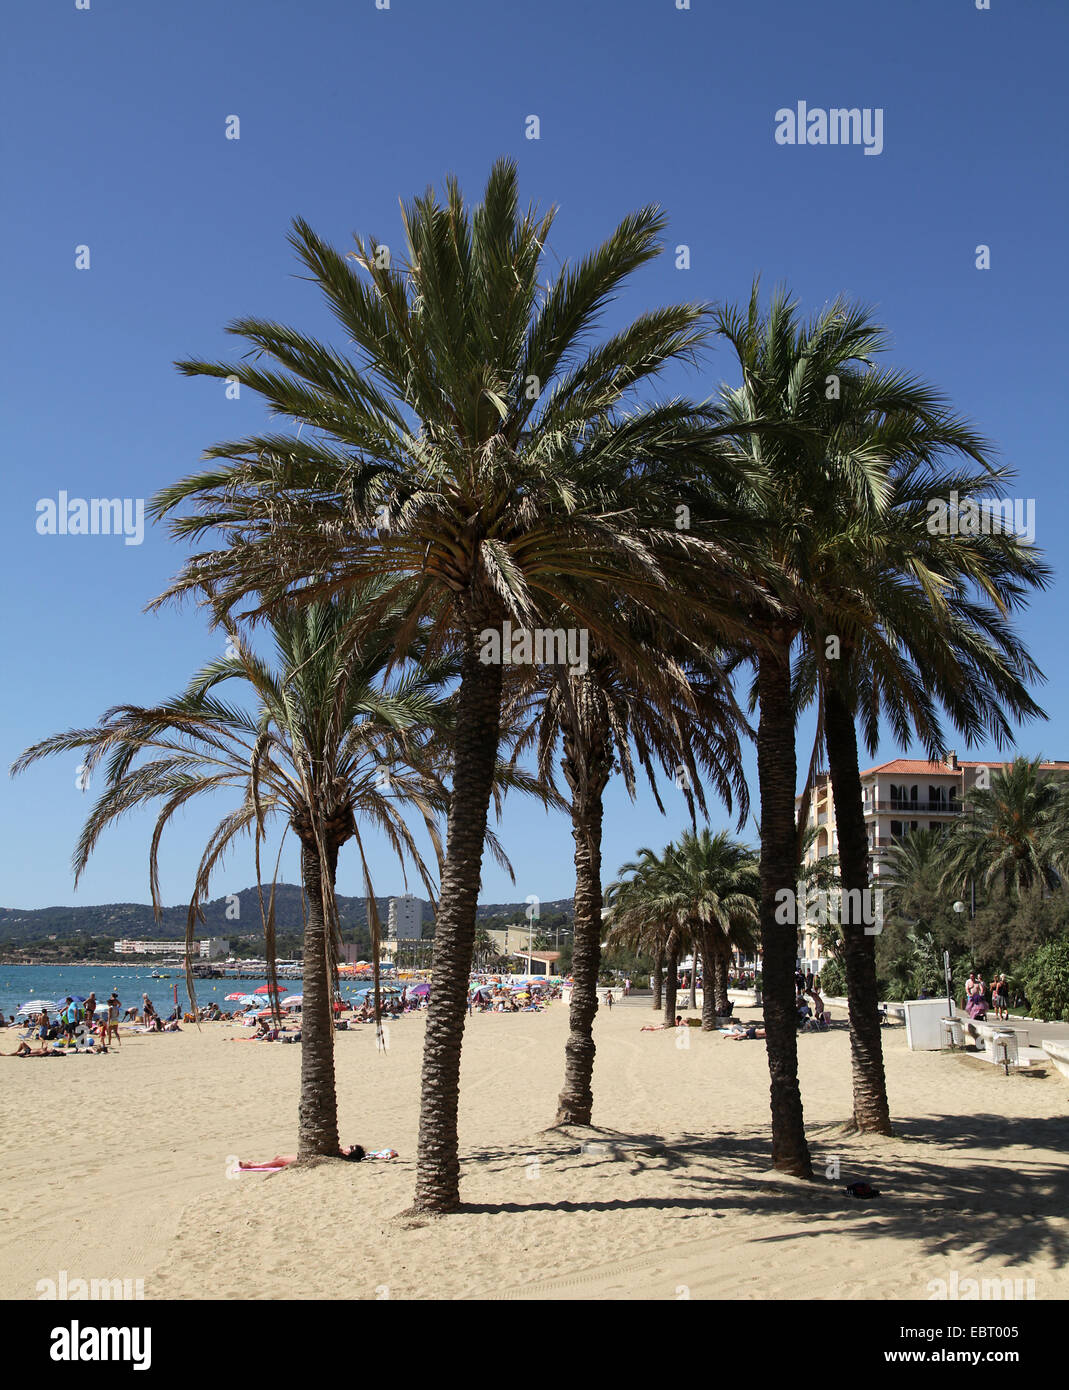 Le lavandou a sud della francia spiaggia con palme.un comune nel dipartimento del Varo nella regione Provenza-Alpi-Côte Azzurra nel sud-est della Francia Foto Stock